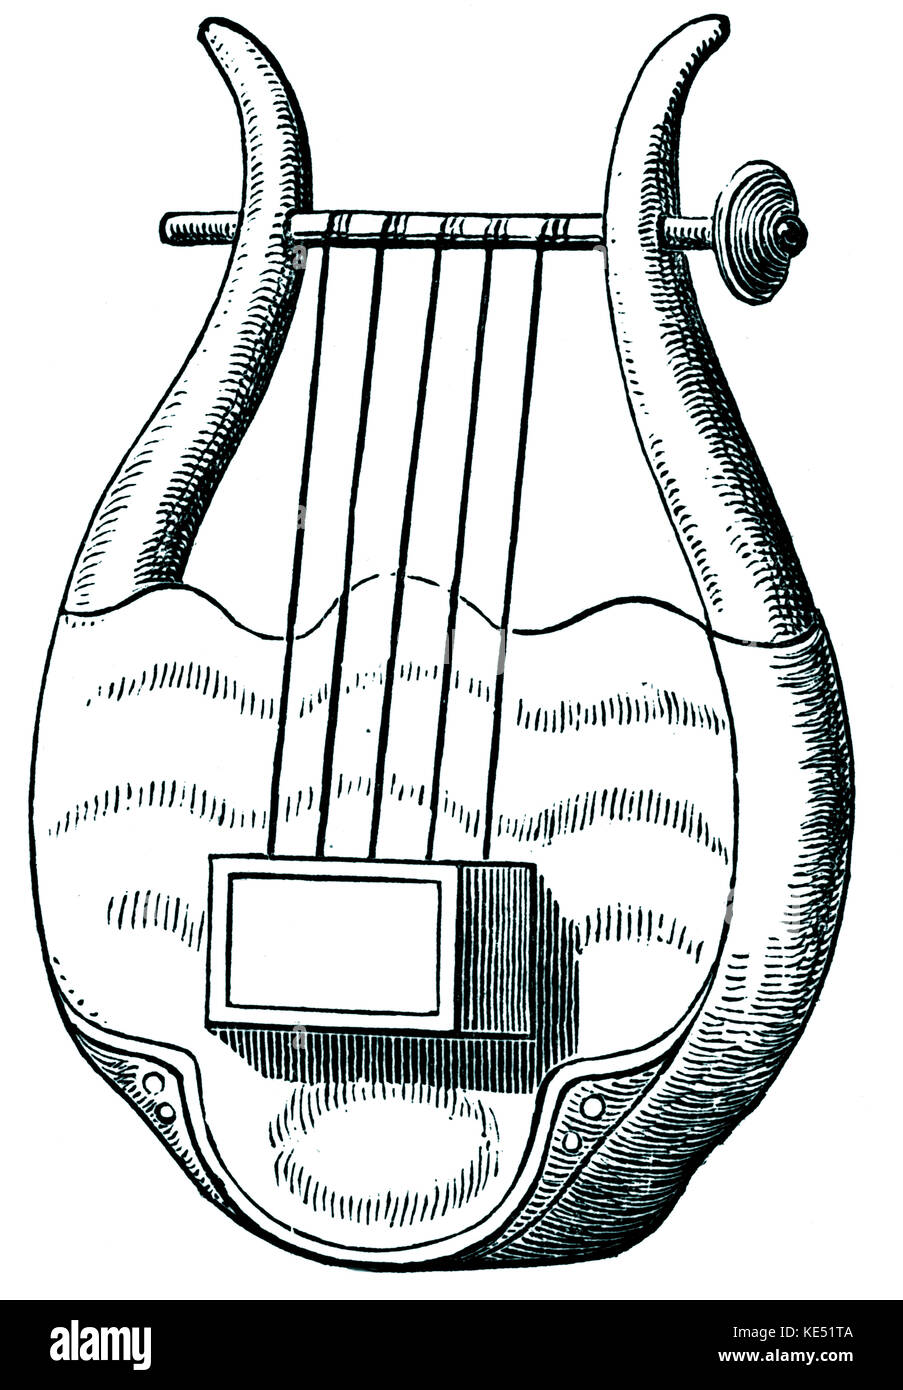 En grec ancien Chelys - instrument à cordes (type de lyre). Banque D'Images